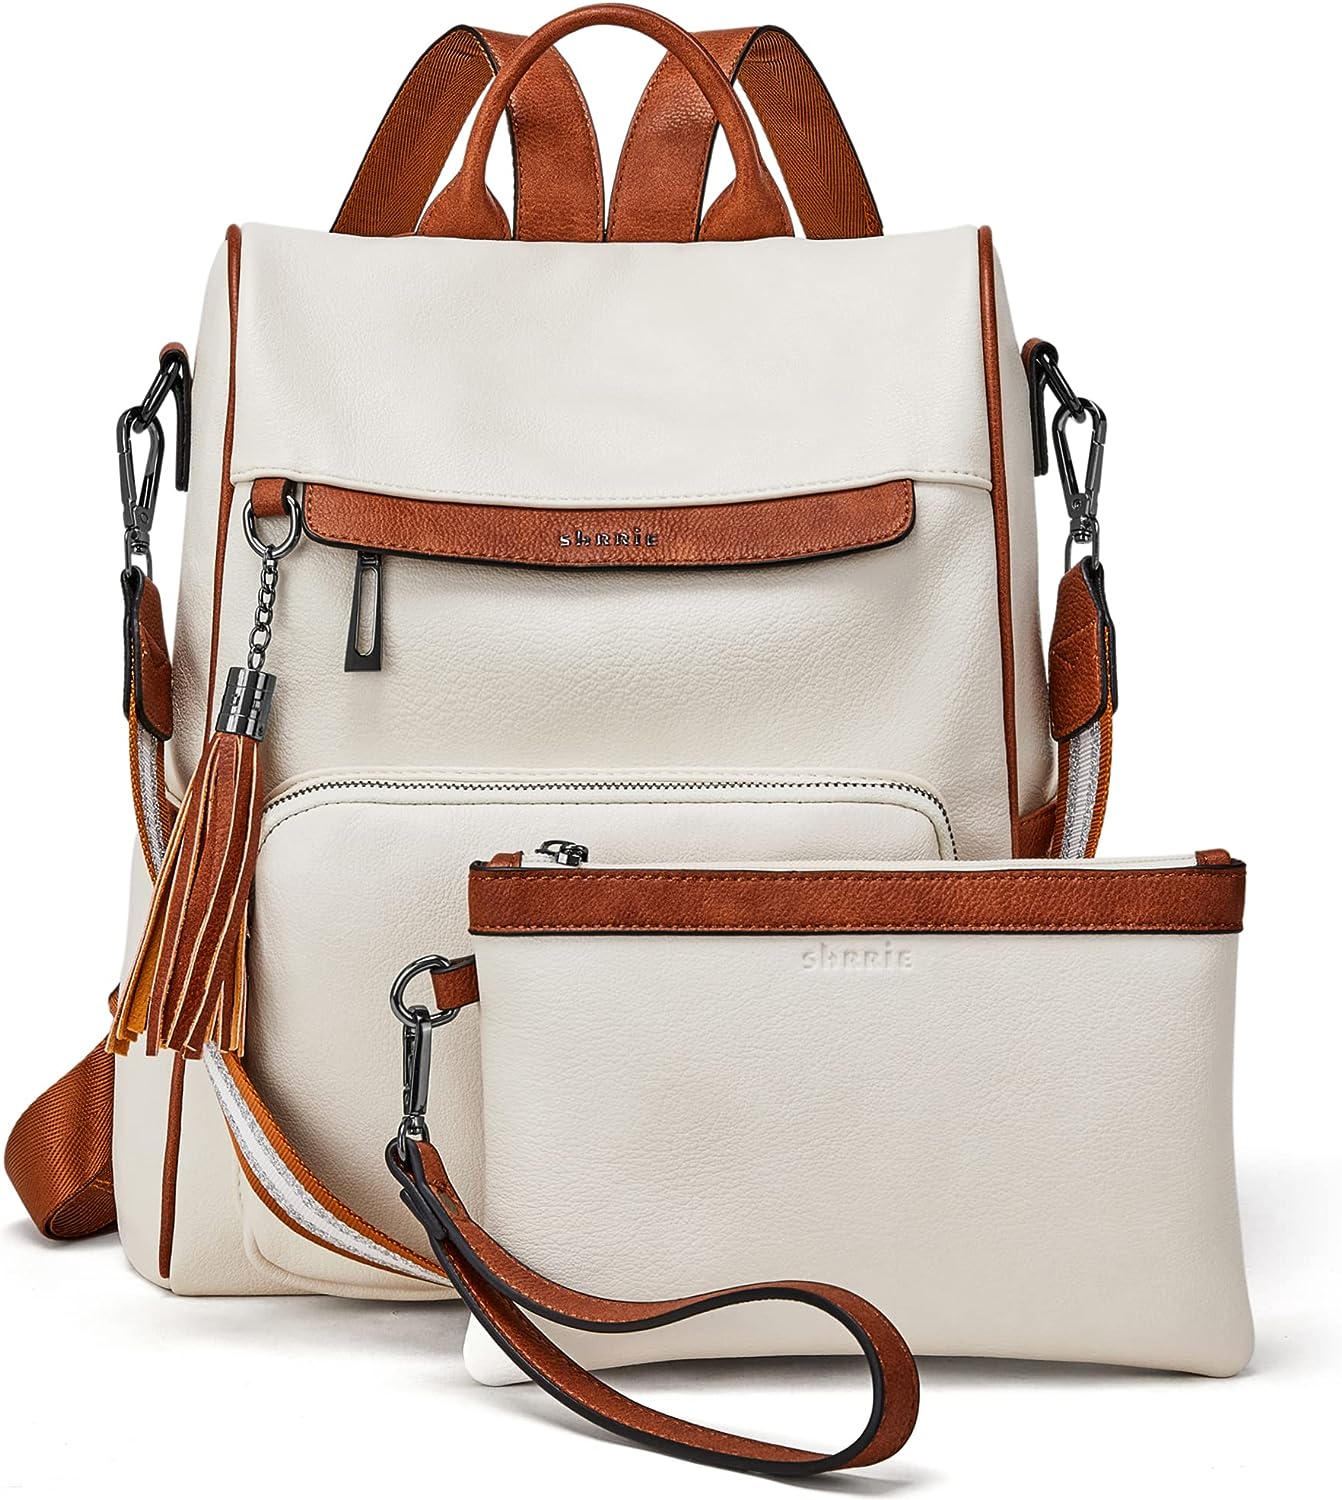 Shrrie Backpack Purse for Women Leather Backpack Fashion Designer Travel  Backpack Convertible Shoulder Bag